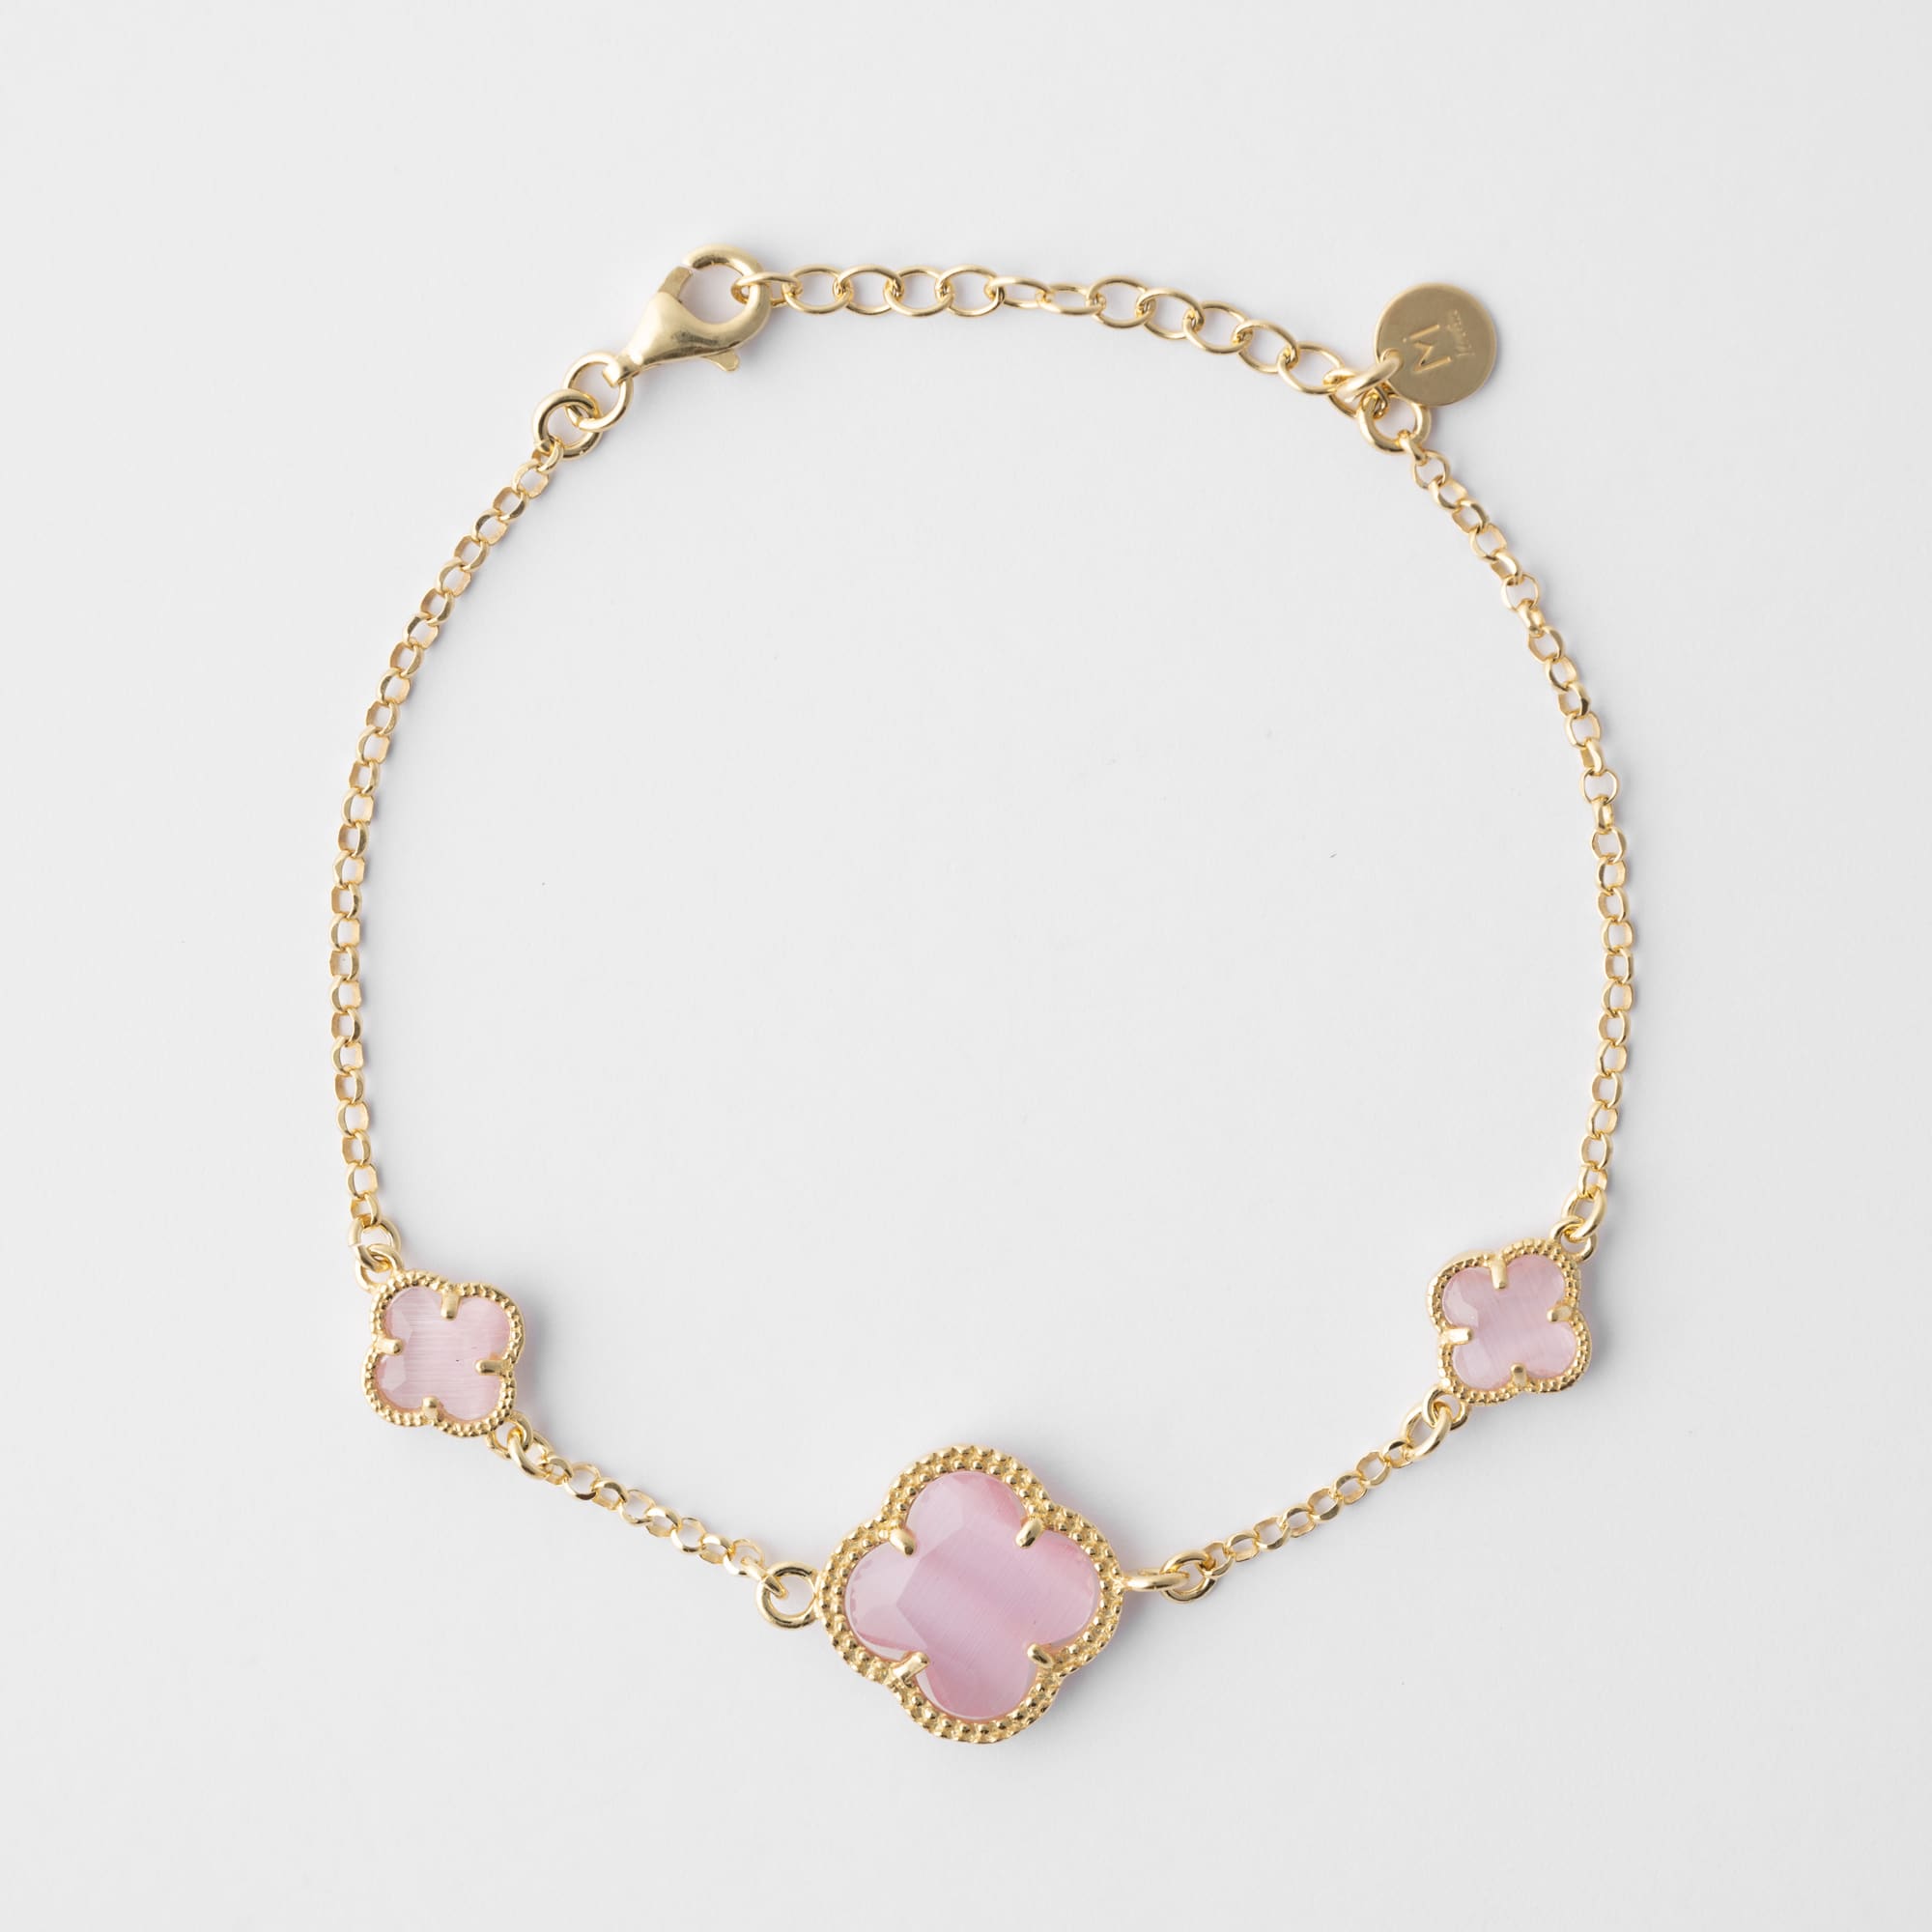 CLOVERLEAF gold bracelet with pink quartz